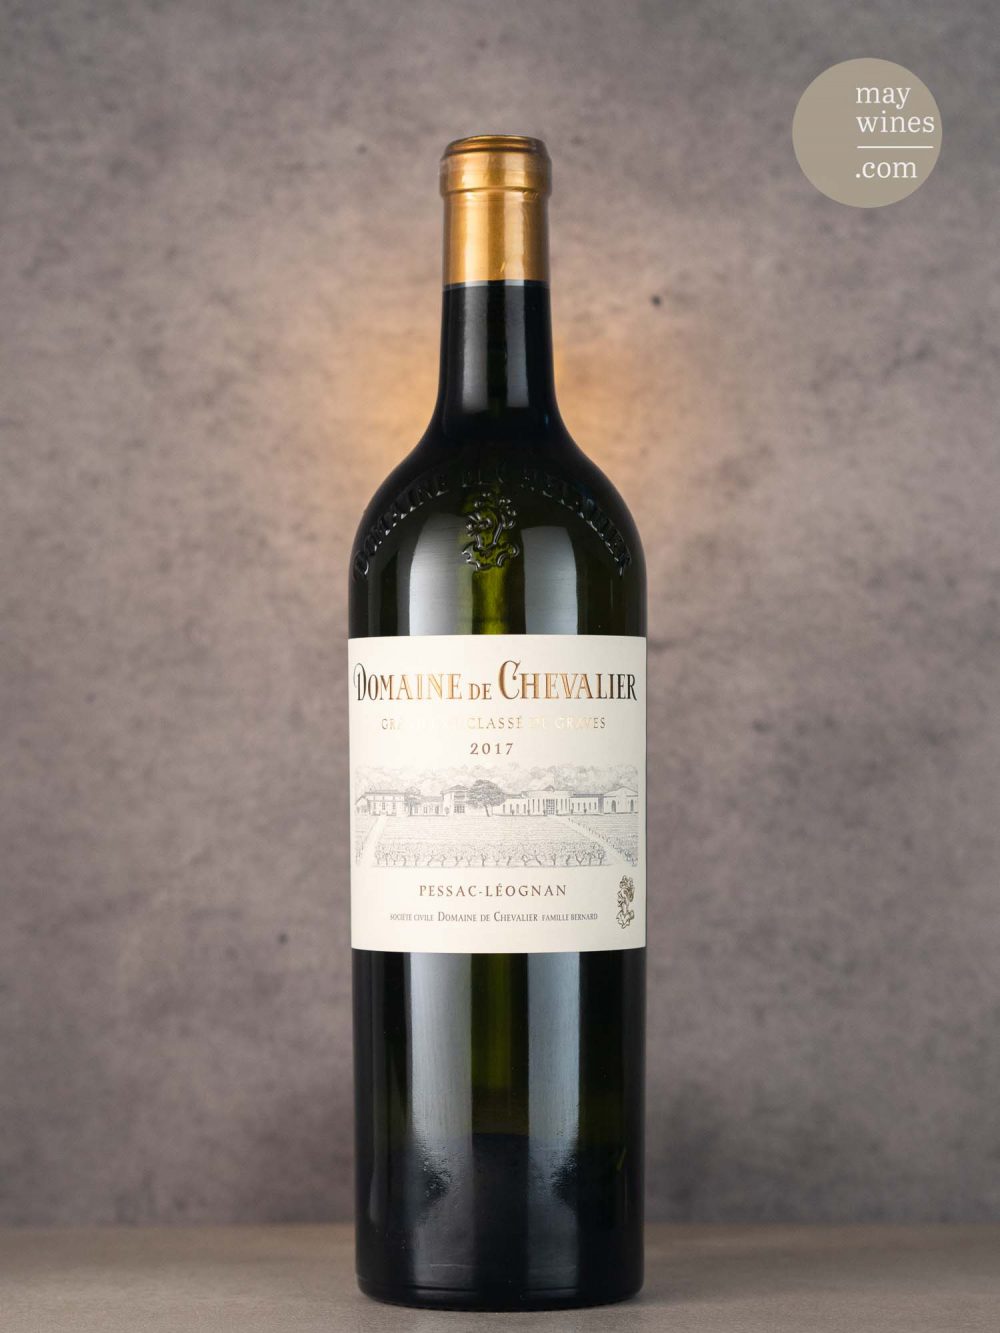 May Wines – Weißwein – 2017 Blanc - Domaine de Chevalier